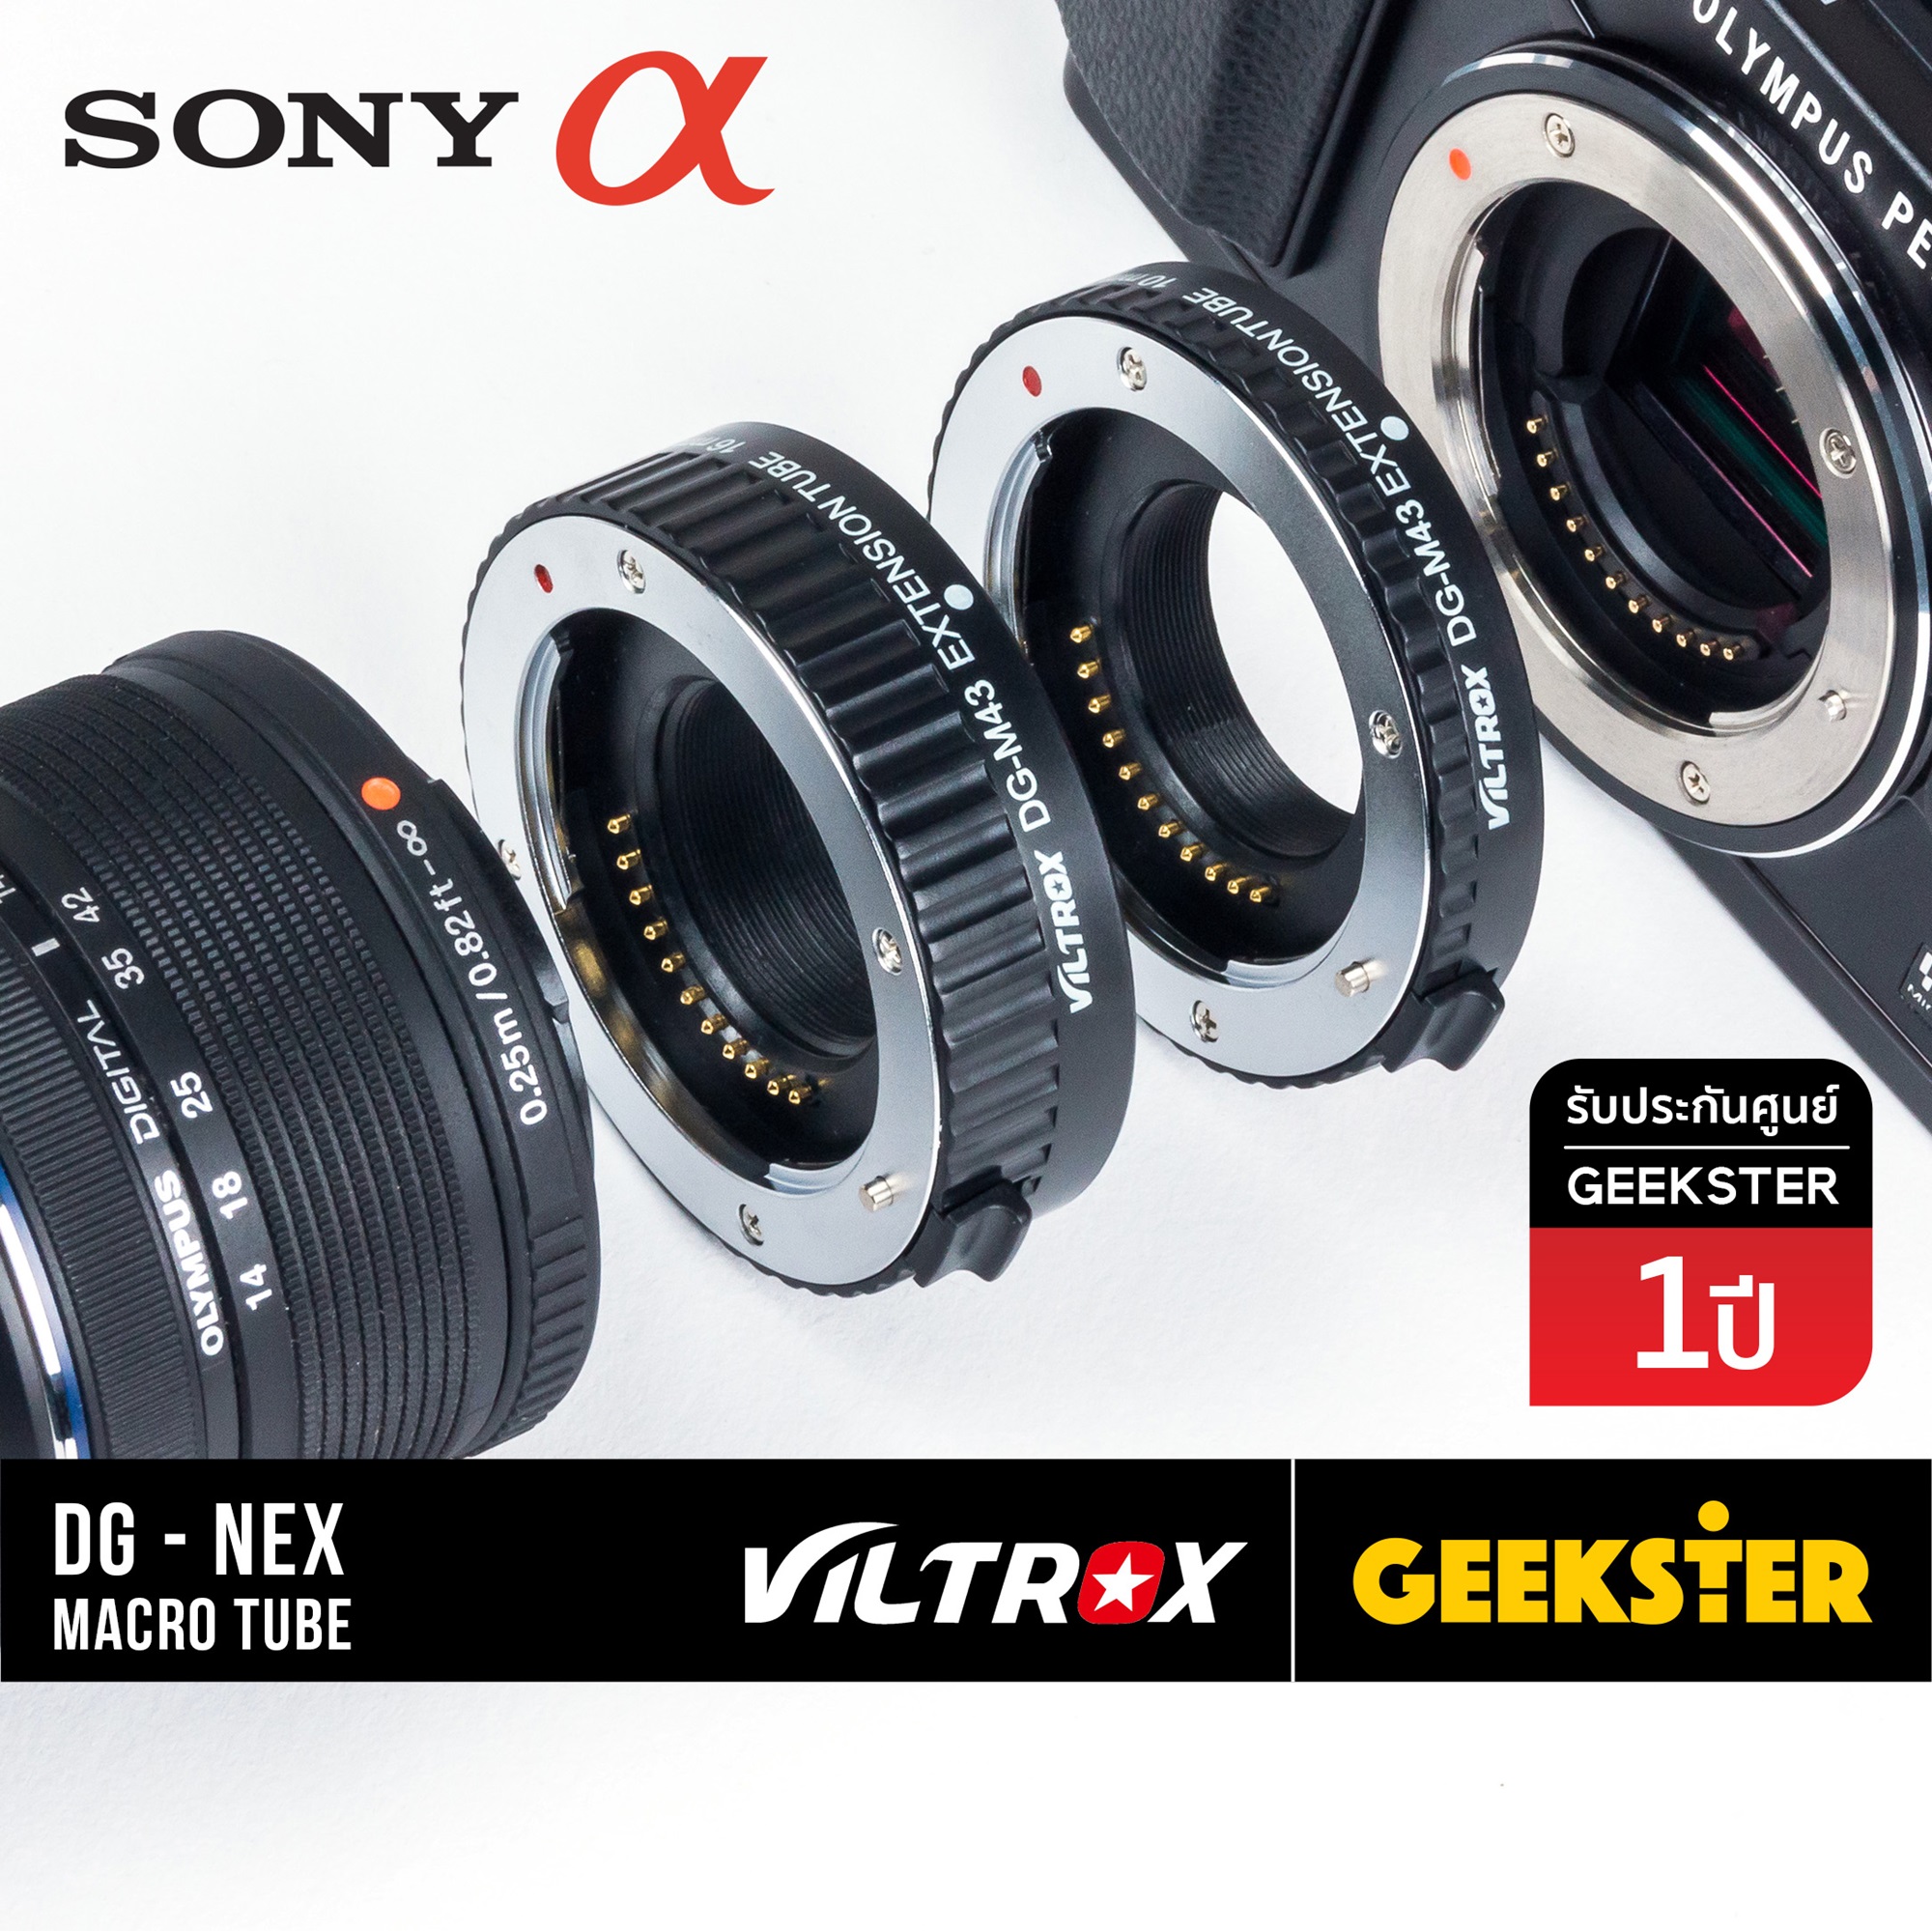 ท่อมาโคร Viltrox Macro Extension Tube สำหรับกล้อง Sony Mirrorless ทุกรุ่น ( สำหรับถ่า่ยภาพ มาโคร ) ( เพื่อช่วยให้ถ่ายภาพระยะได้ใกล้ขึ้น ) ( ออโต้ โฟกัส ) ( DG-NEX ) ( E / FE / NEX ) ( Geekster )